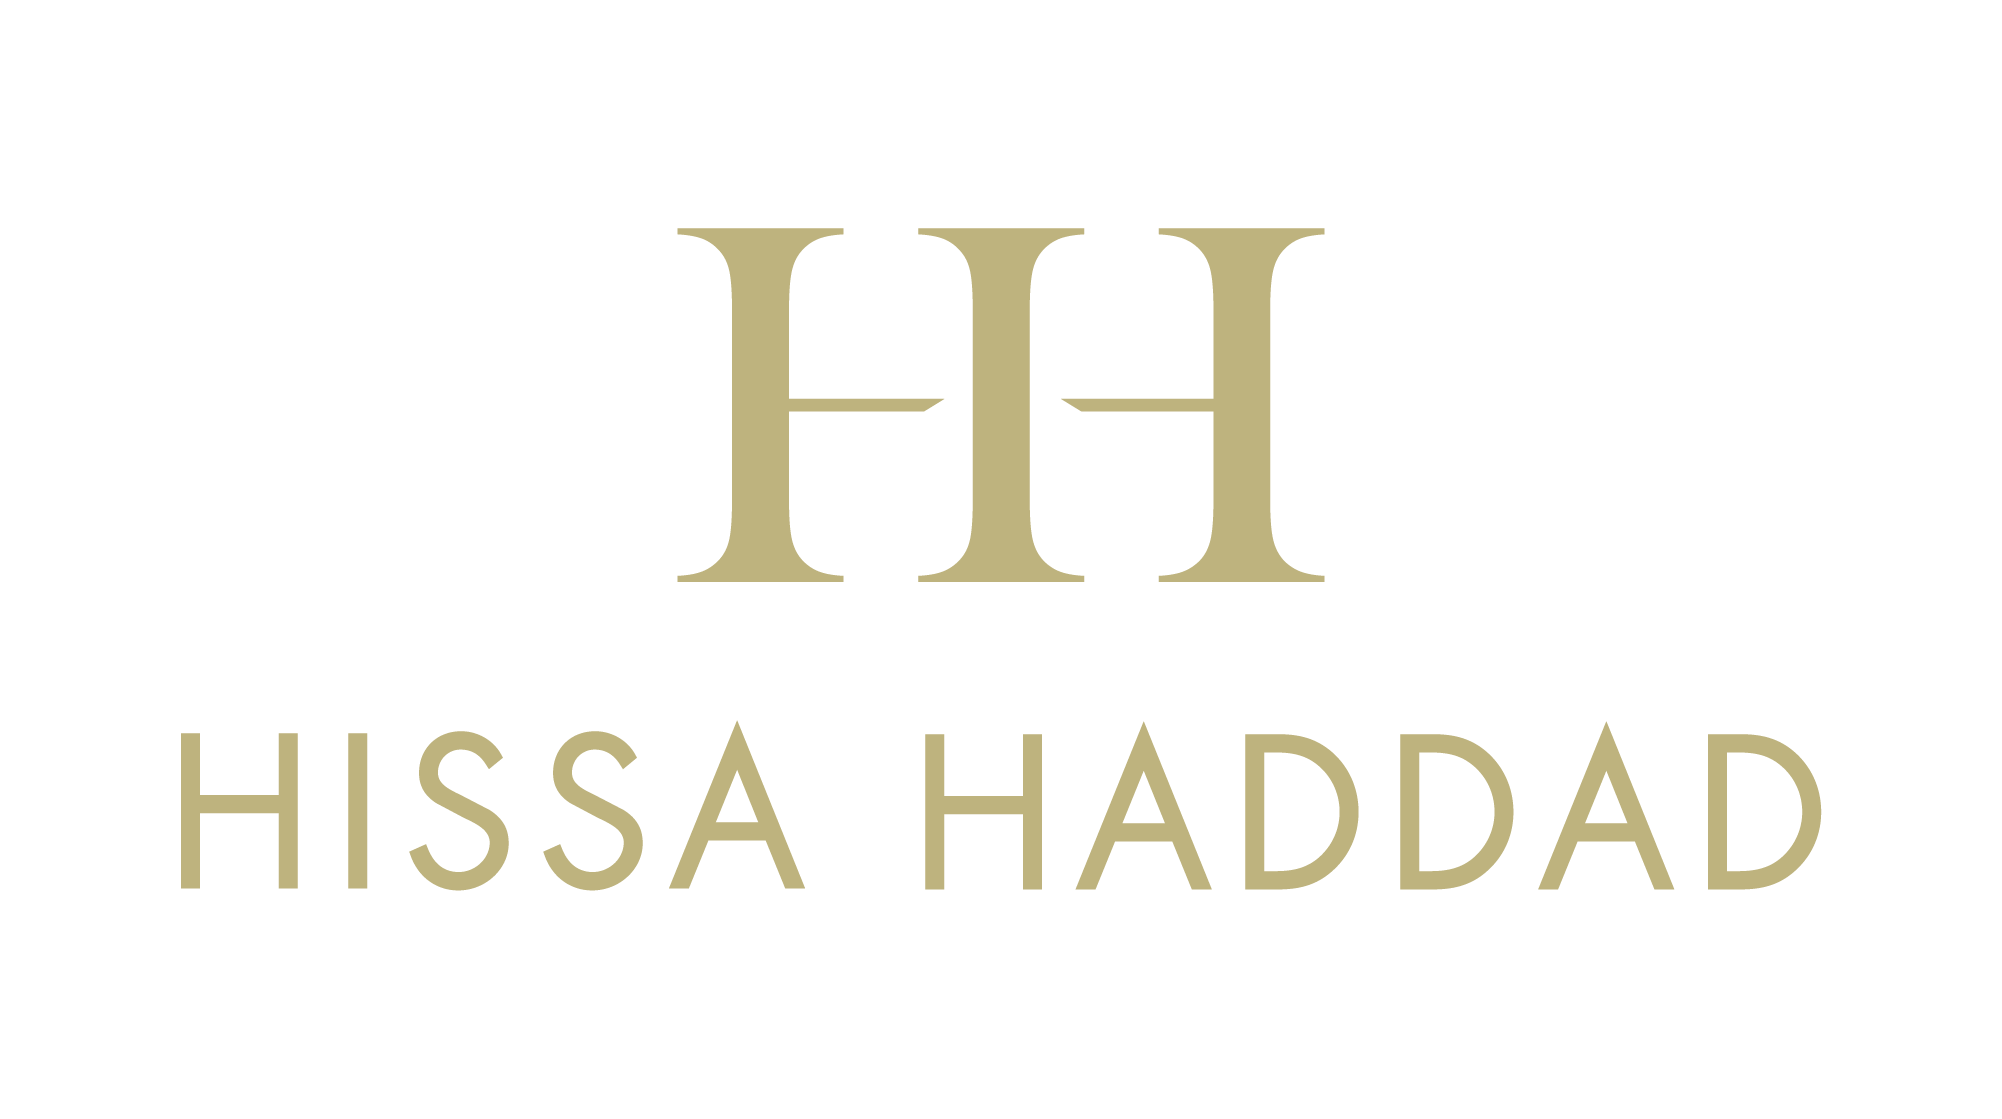 Hissa Haddad